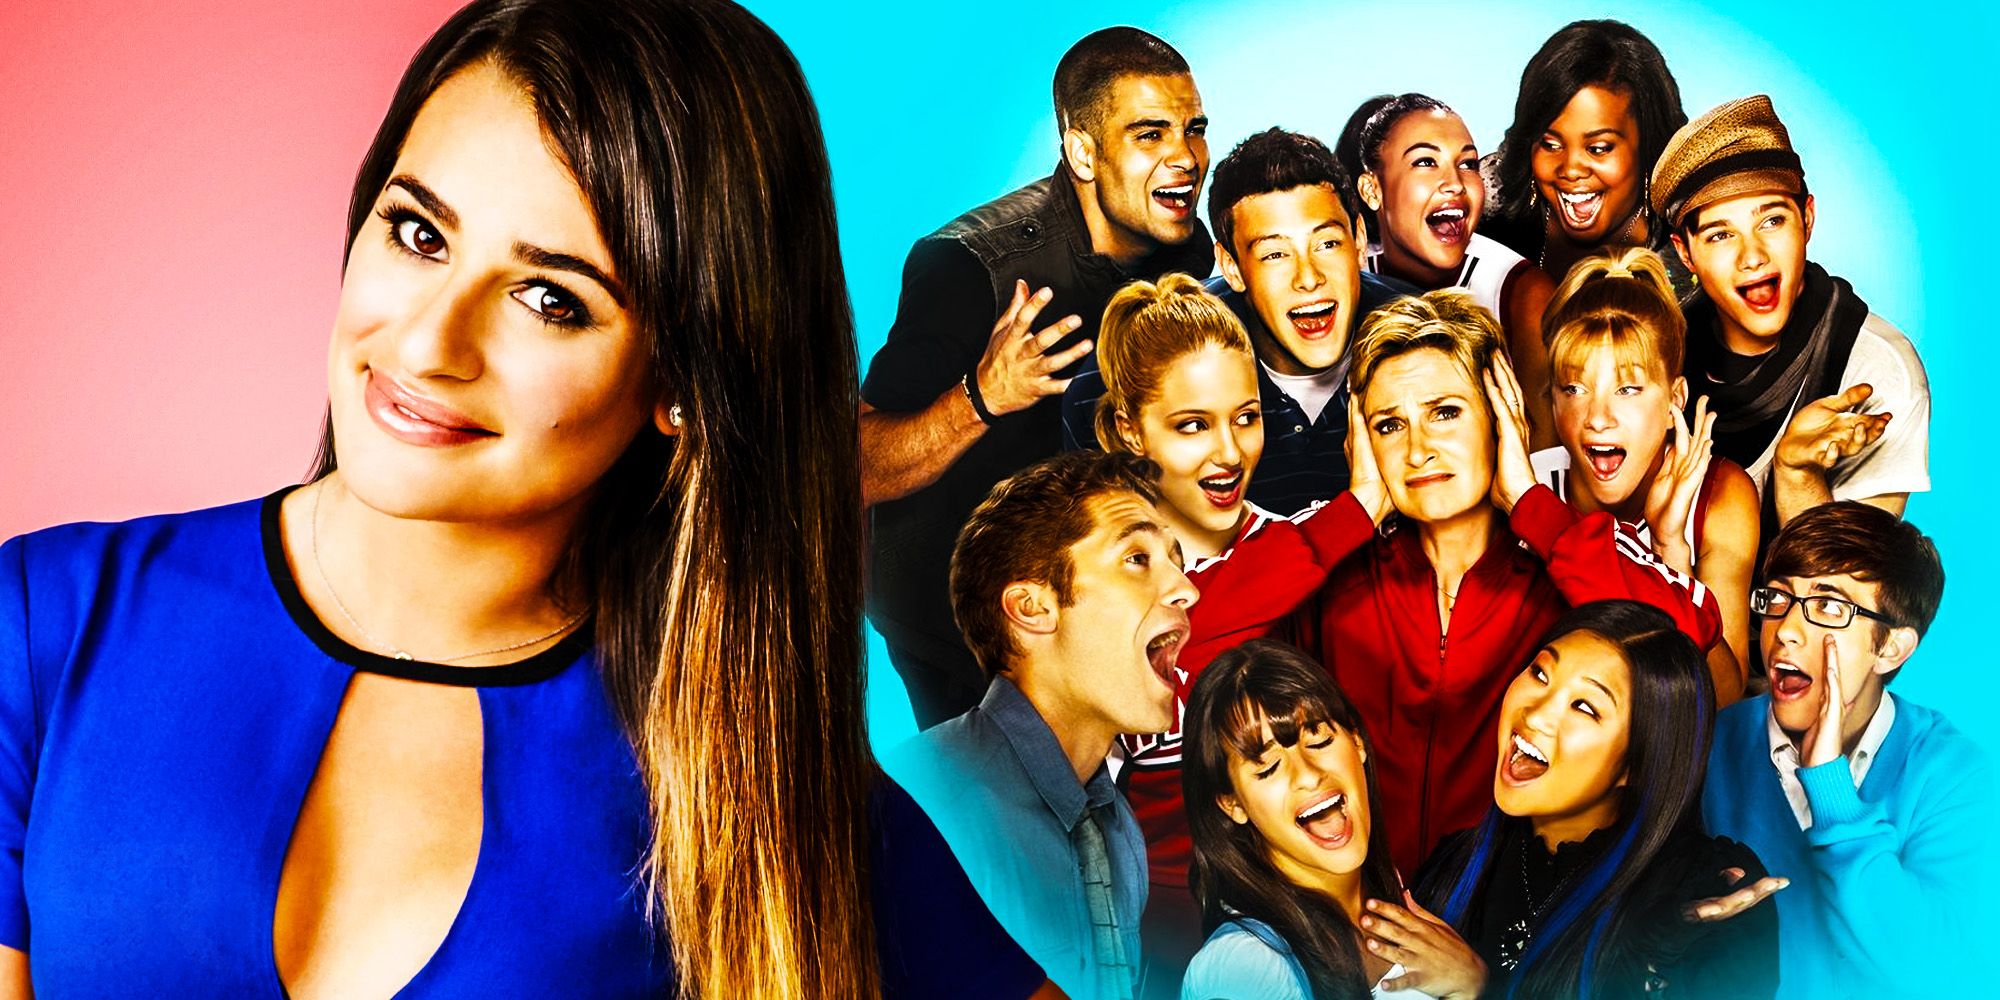 Glee Cast and Rachel